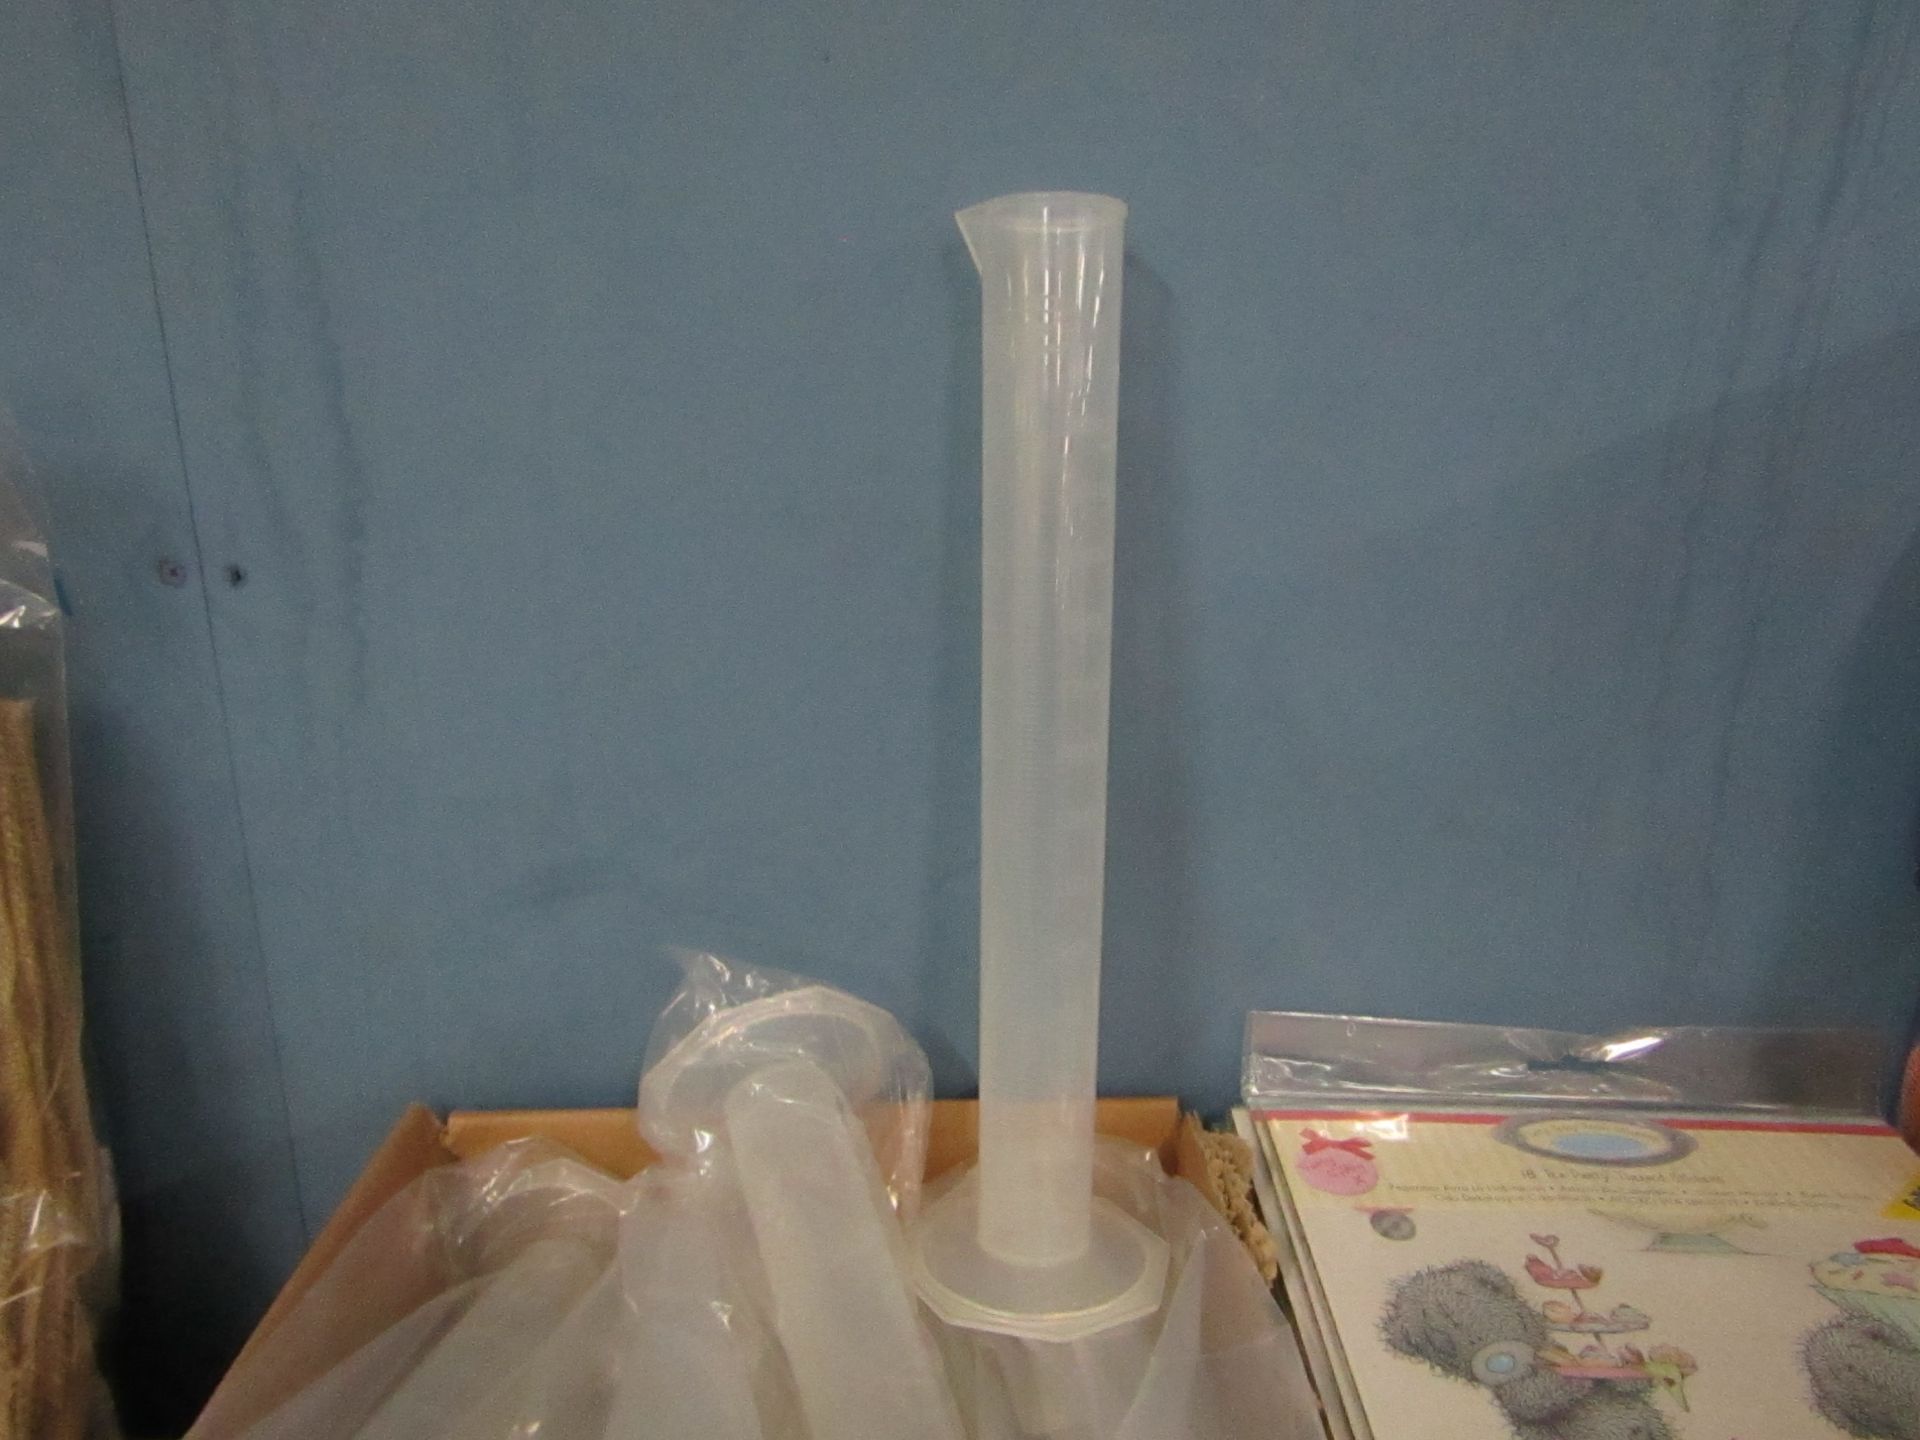 20x Eisco - Transparent Plastic 250ml Beaker's - New & Packaged.